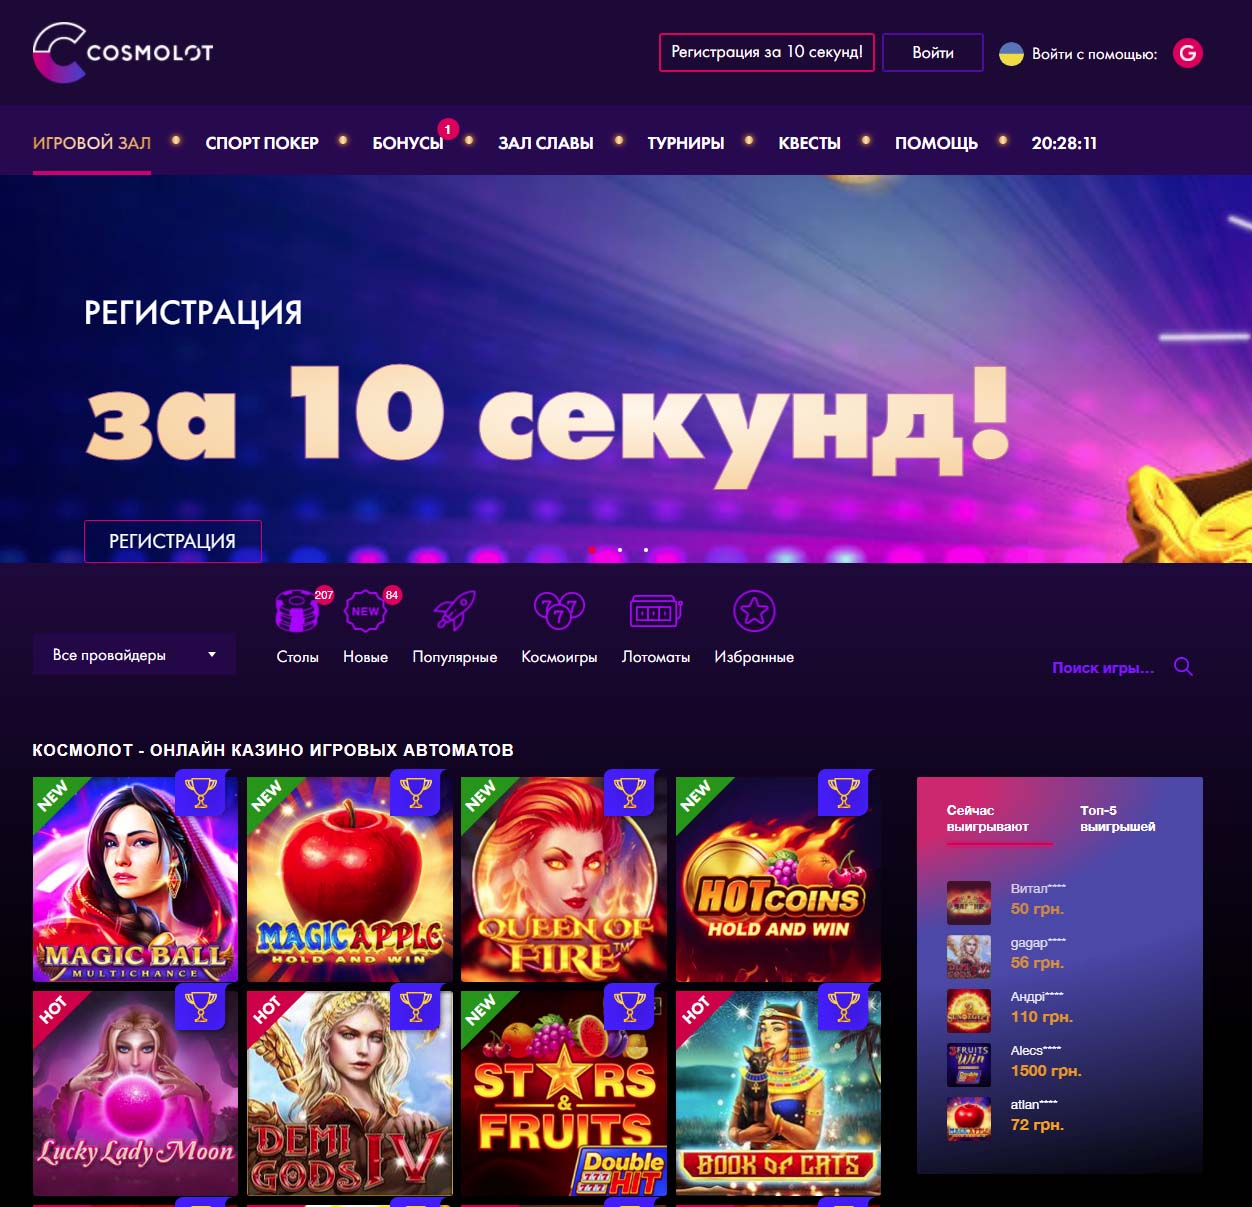 Легальное Онлайн казино - это вебсайт, на котором можно играть онлайн